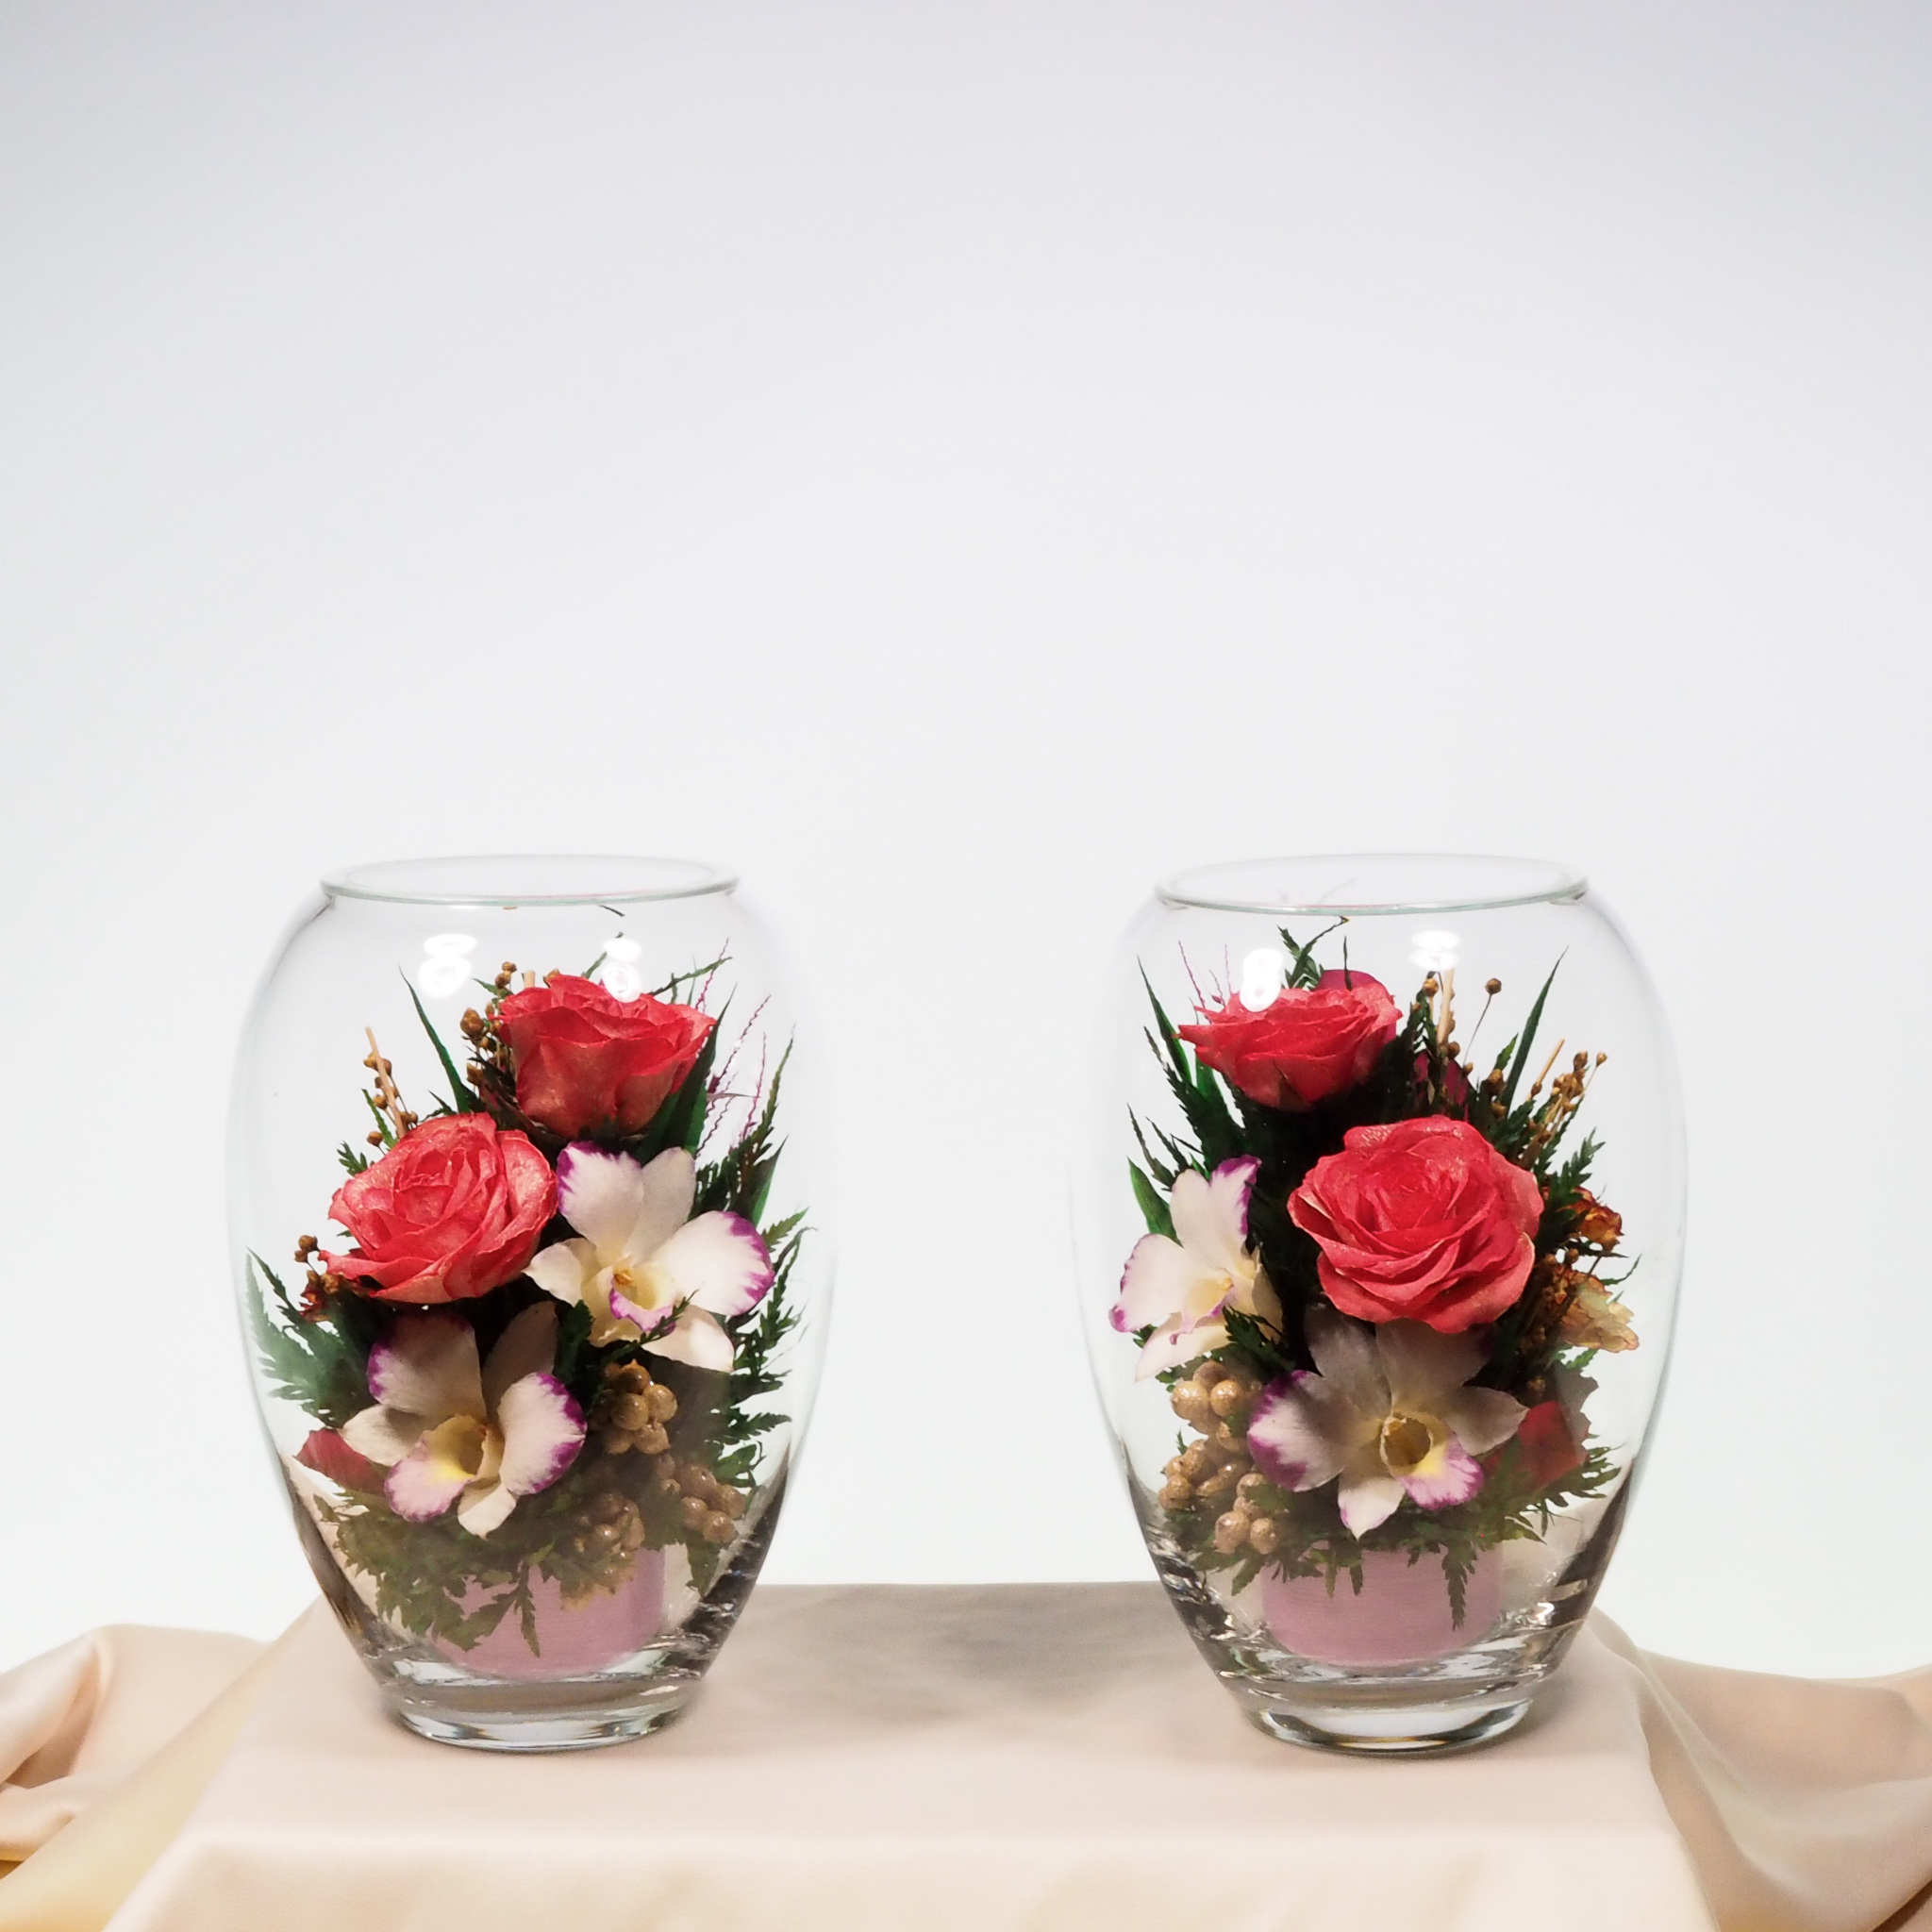 ชุดดอกไม้บูชาพระในโหลแก้วโดย Fi’ora Thailand (2 ชิ้นต่อชุด) (ไหเล็ก, orcids, reddish pink rose, Worship Collection). ดอกไม้ธรรมชาติ 100% อยู่ได้ถึง 5 ปี.